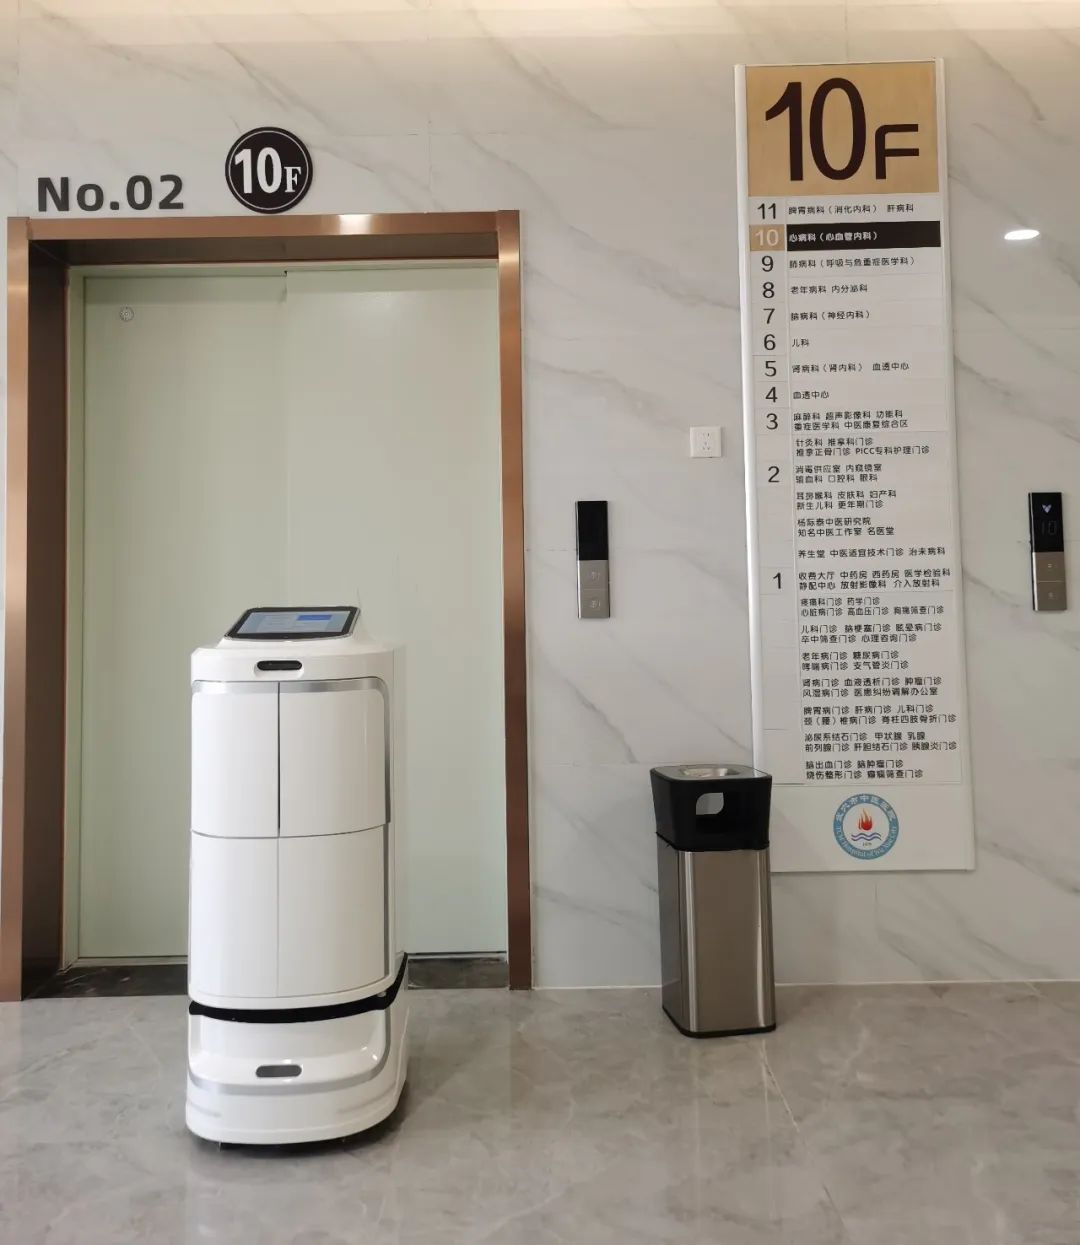 Инновационная технология, помогающая лечению: три серии роботов Alpha robotics в приложении «Городская больница традиционной китайской медицины Усюэ»!